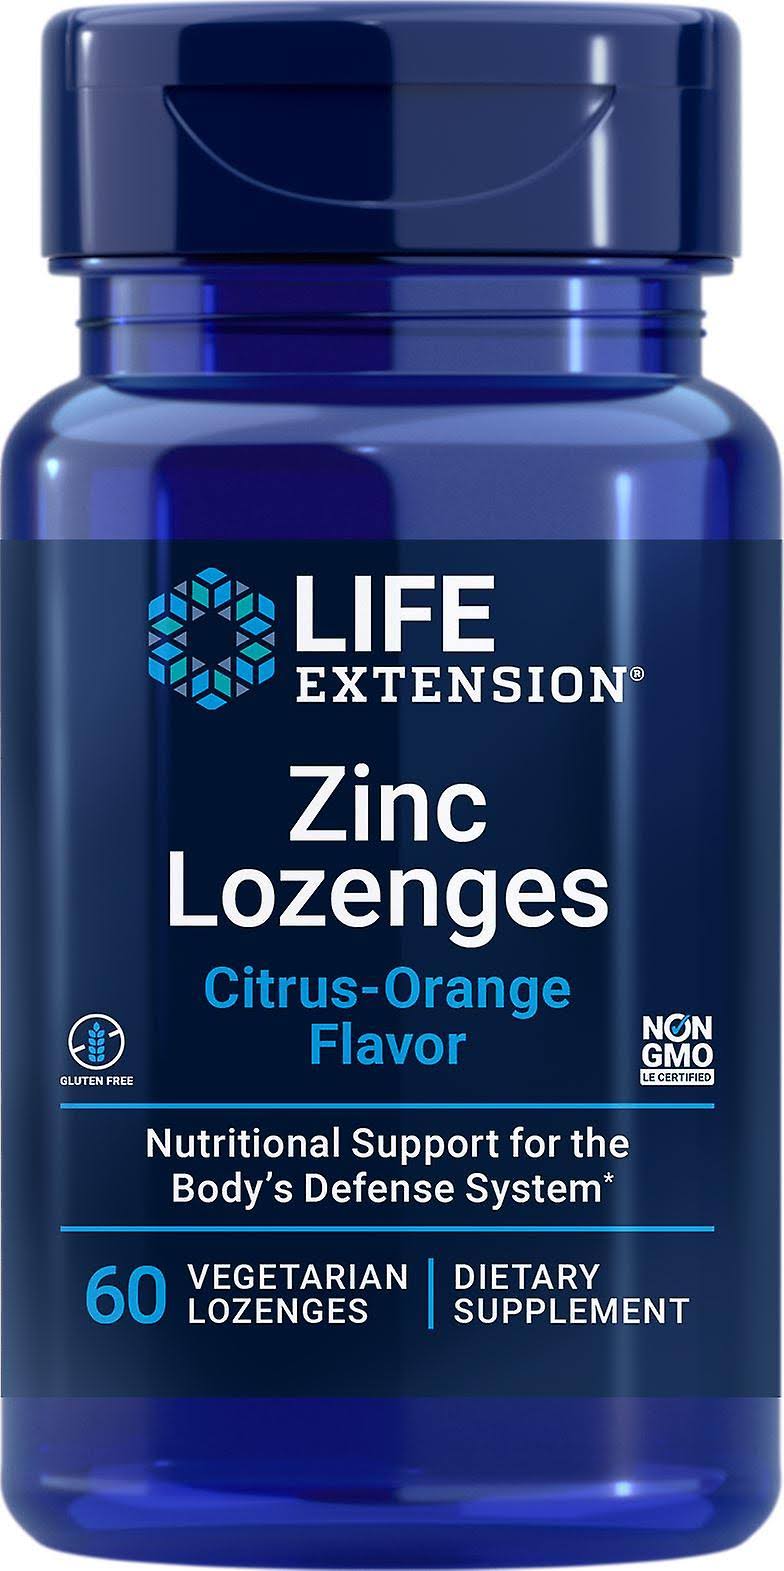 Zinc Lozenges Life Extension Supplement - Natural Citrus Orange Flavor, 60ct